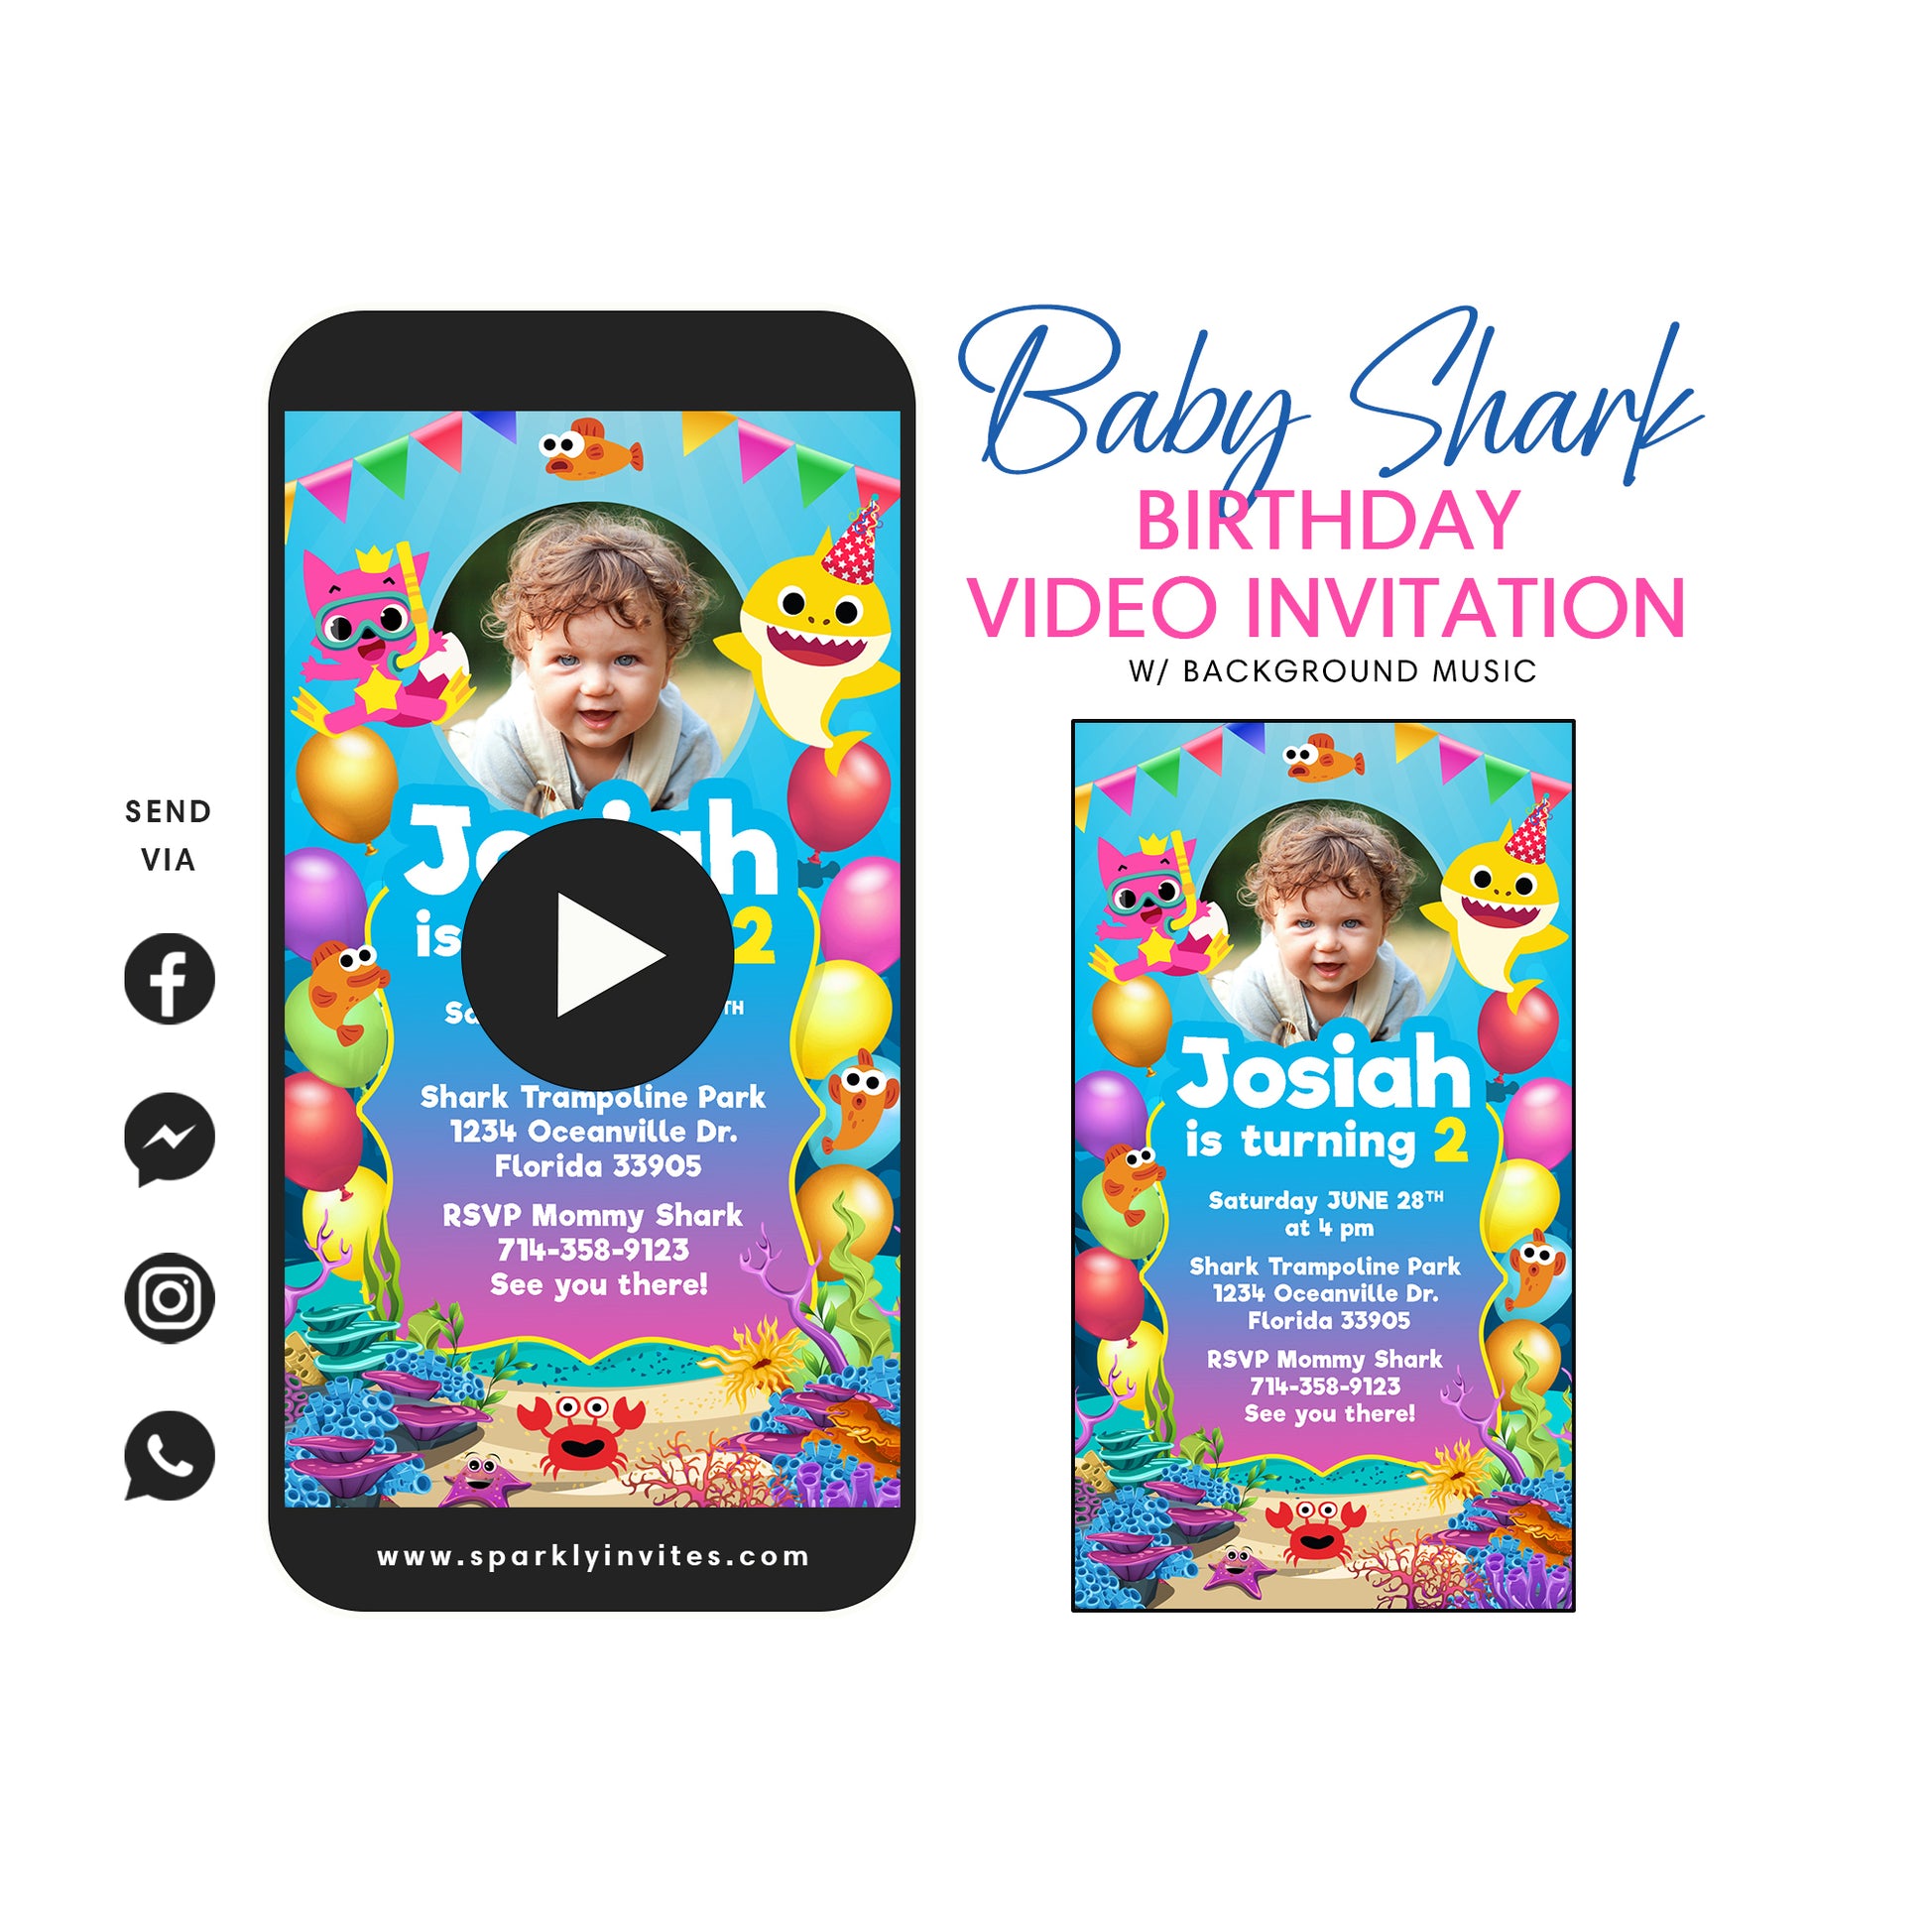 Baby Shark party video invitation